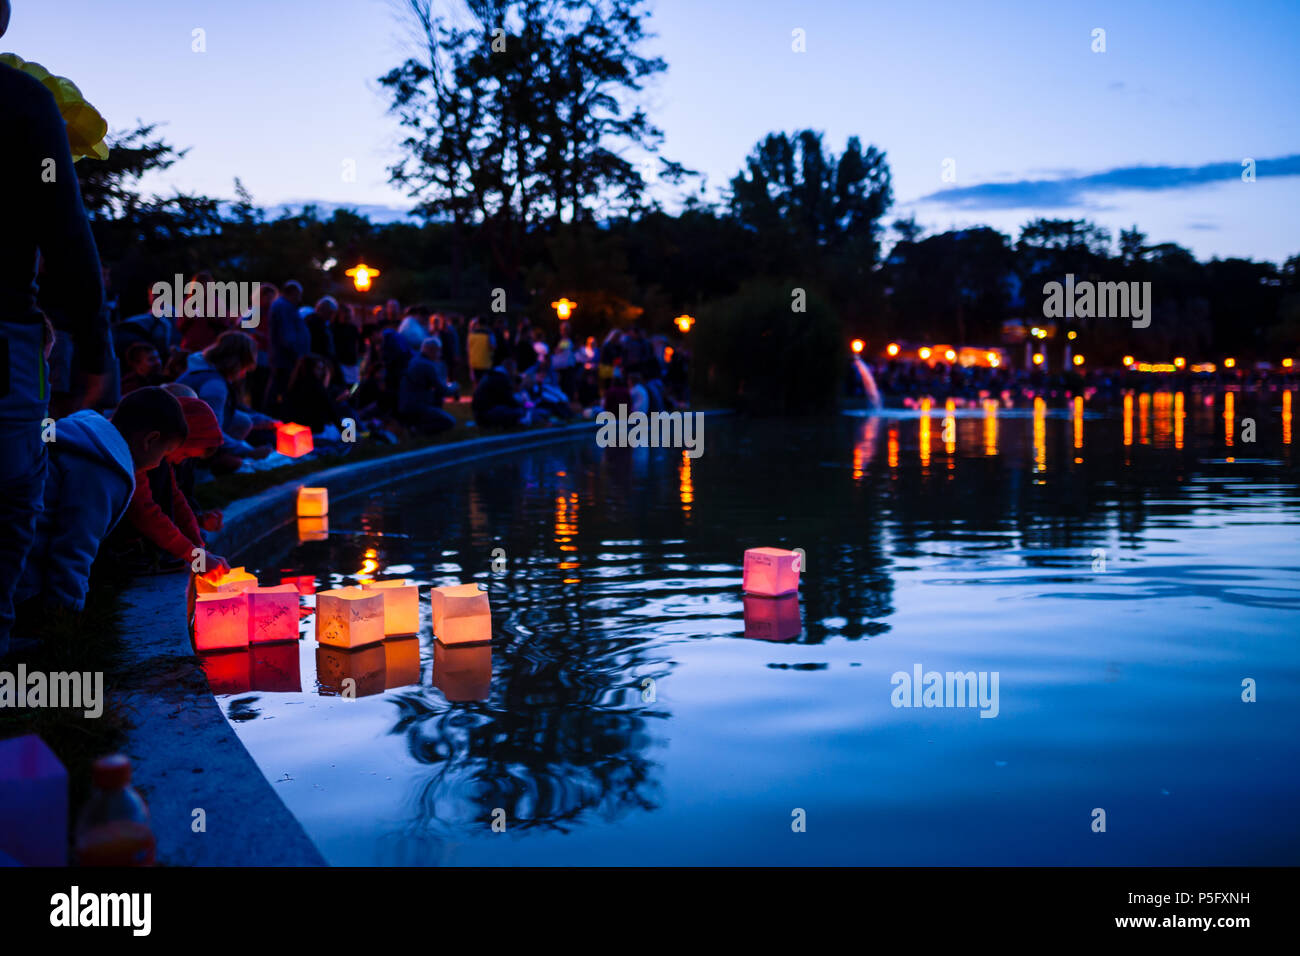 Gyömrő, Ungheria - 23 Jun 2018: persone si intendono le lanterne con candele accese sul lago sulla notte d'estate. Foto Stock